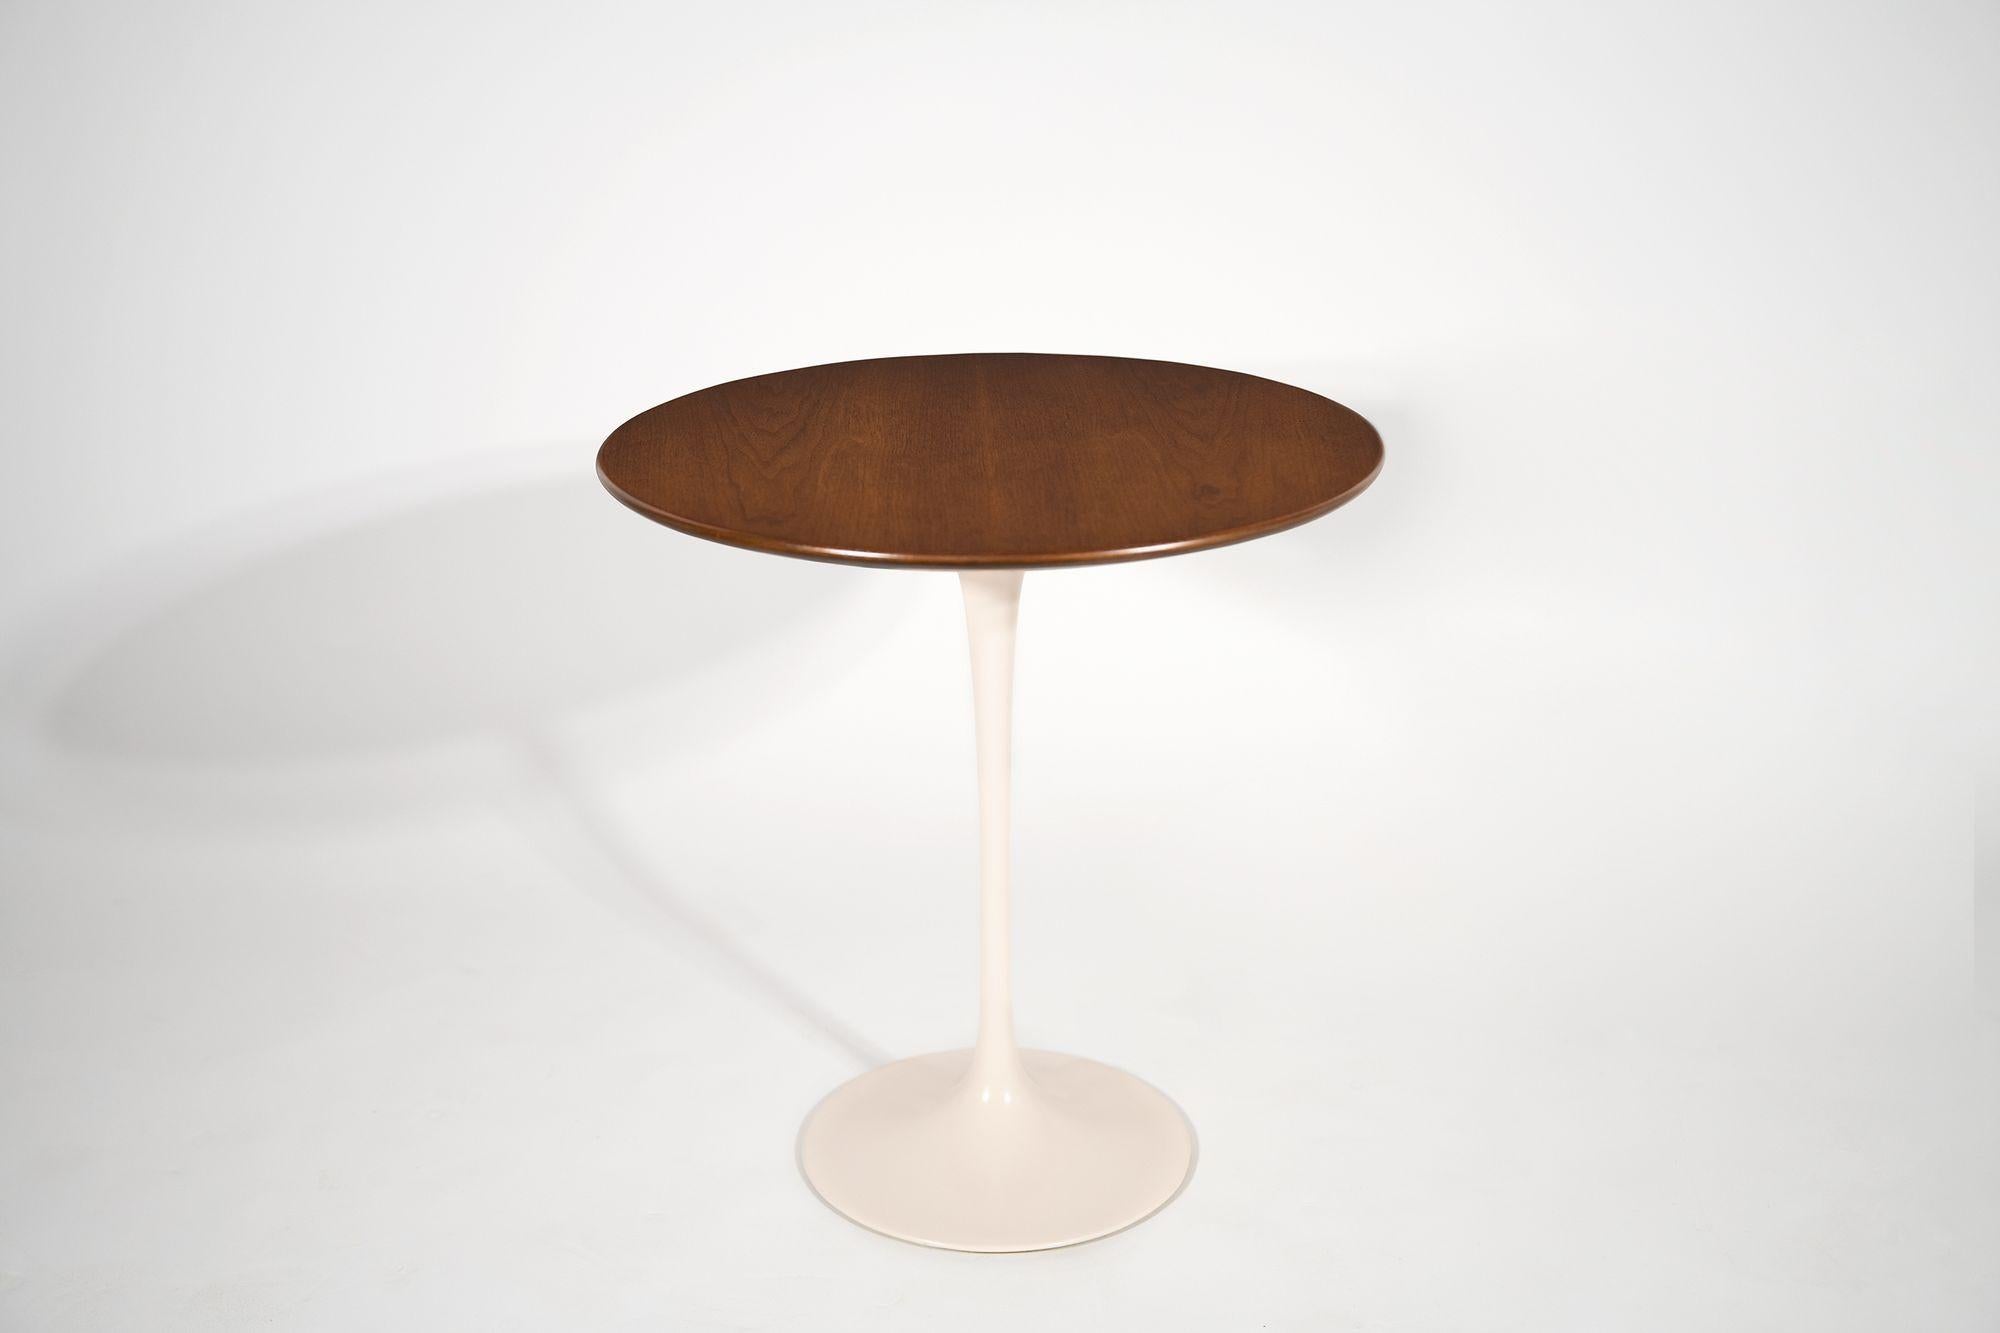 North American Eero Saarinen Walnut Tulip Side Table for Knoll with Walnut Tops